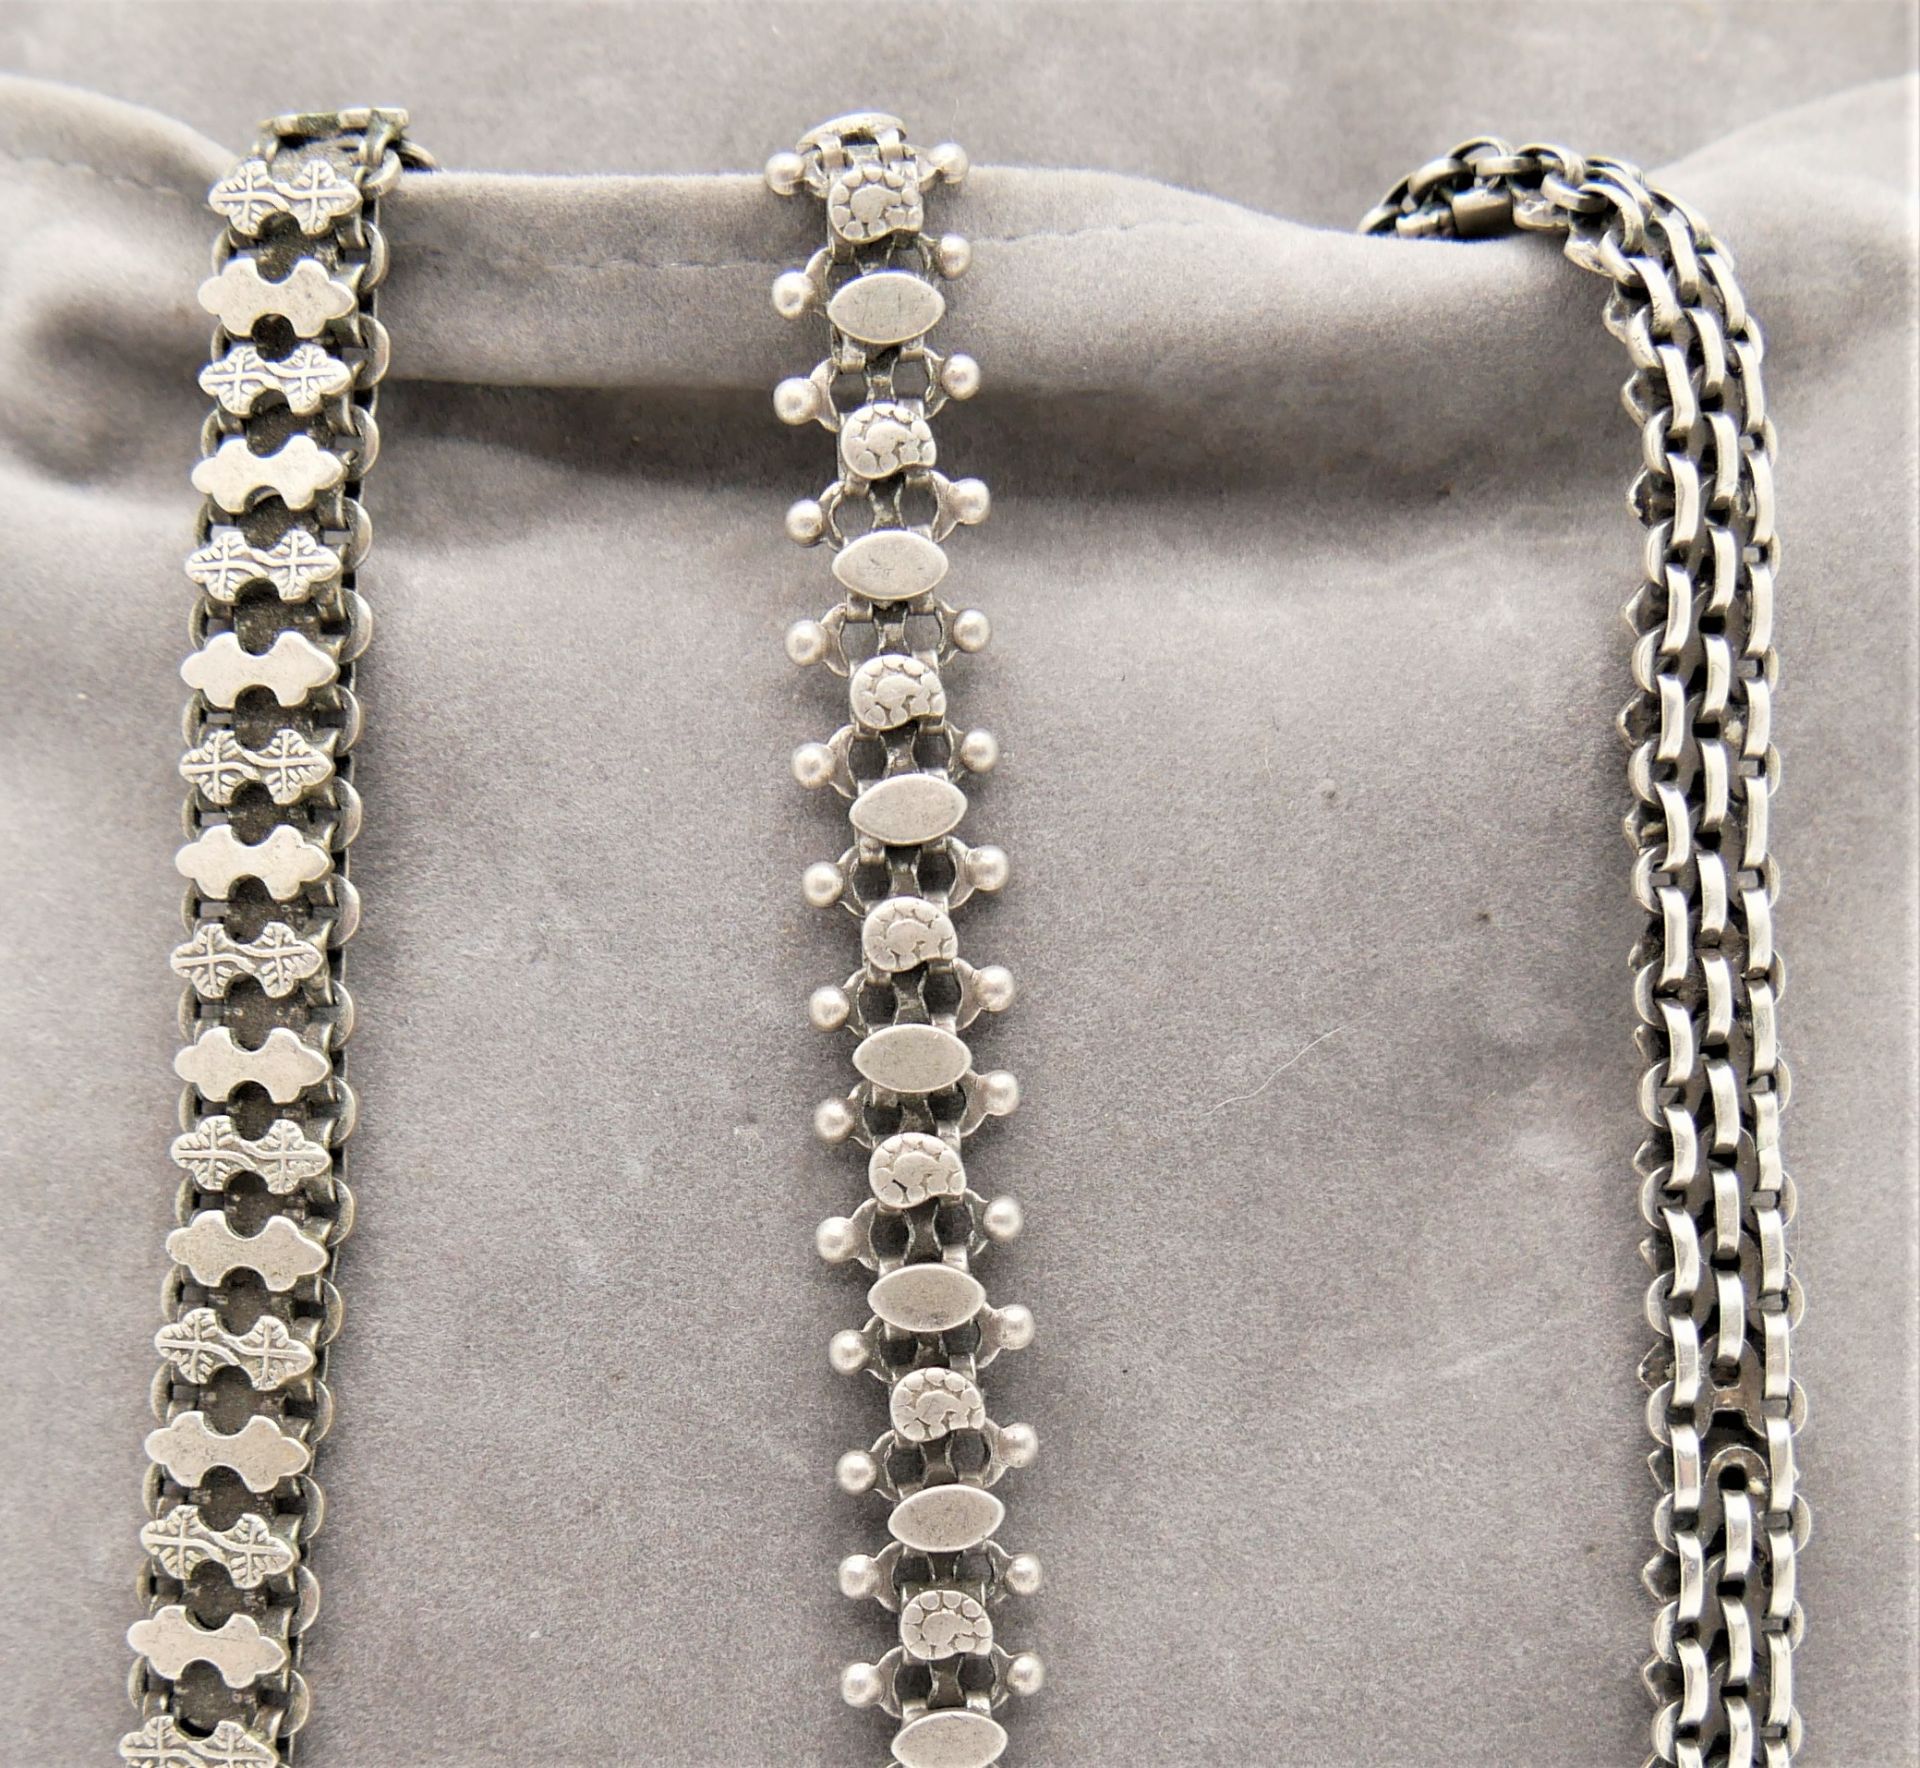 Lot Silberschmuck, bestehend aus 3 massiven Armbändern, Silber geprüft. Länge bis 25 cm - Image 2 of 2